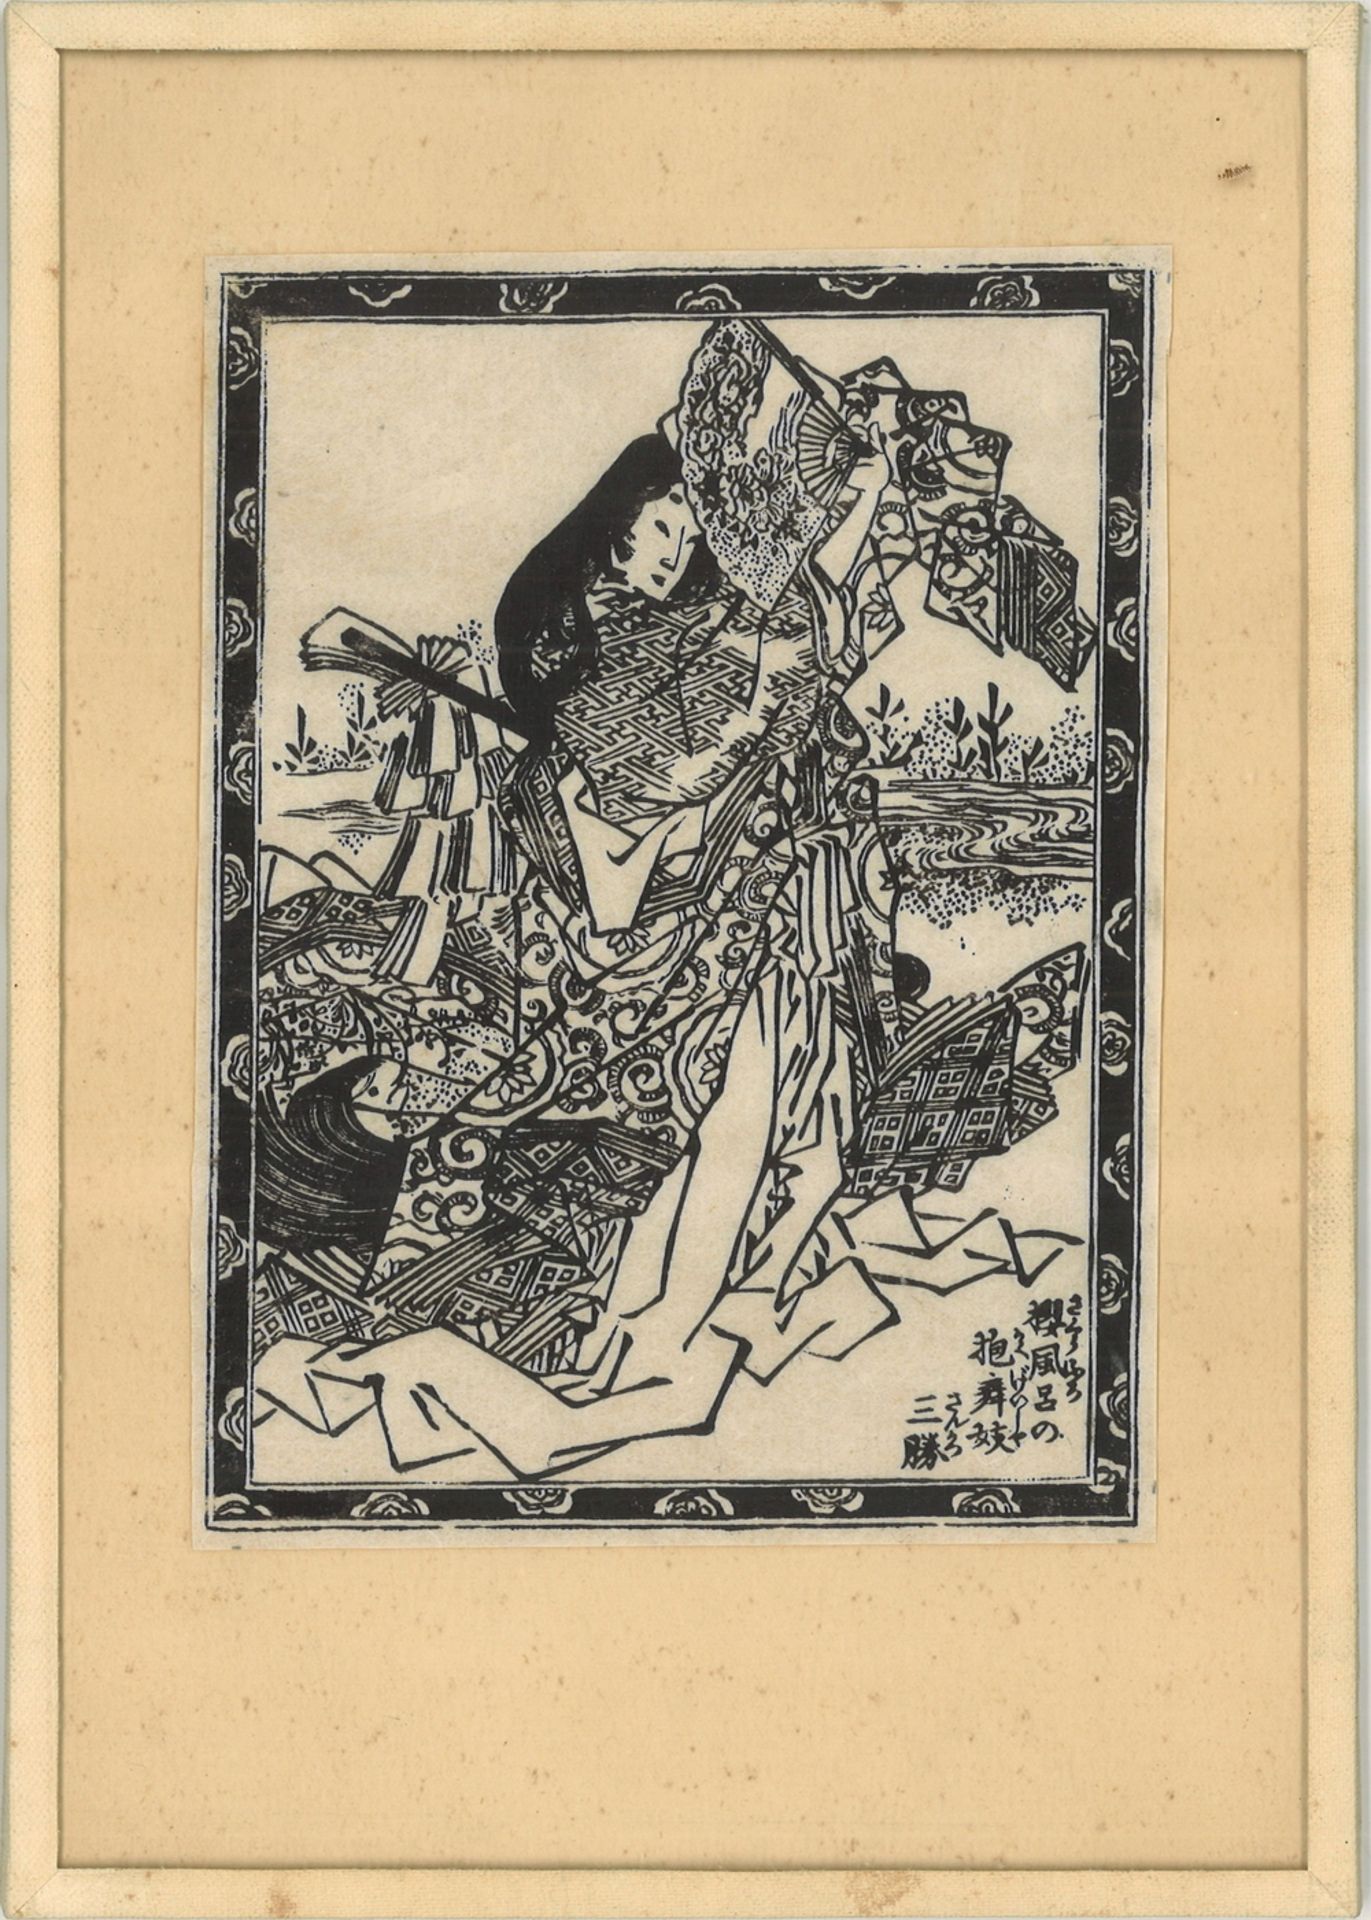 3 Japanische Holzschnitte um 1900, hinter Glas gerahmt. Verschiedene Ansichten. - Image 2 of 4